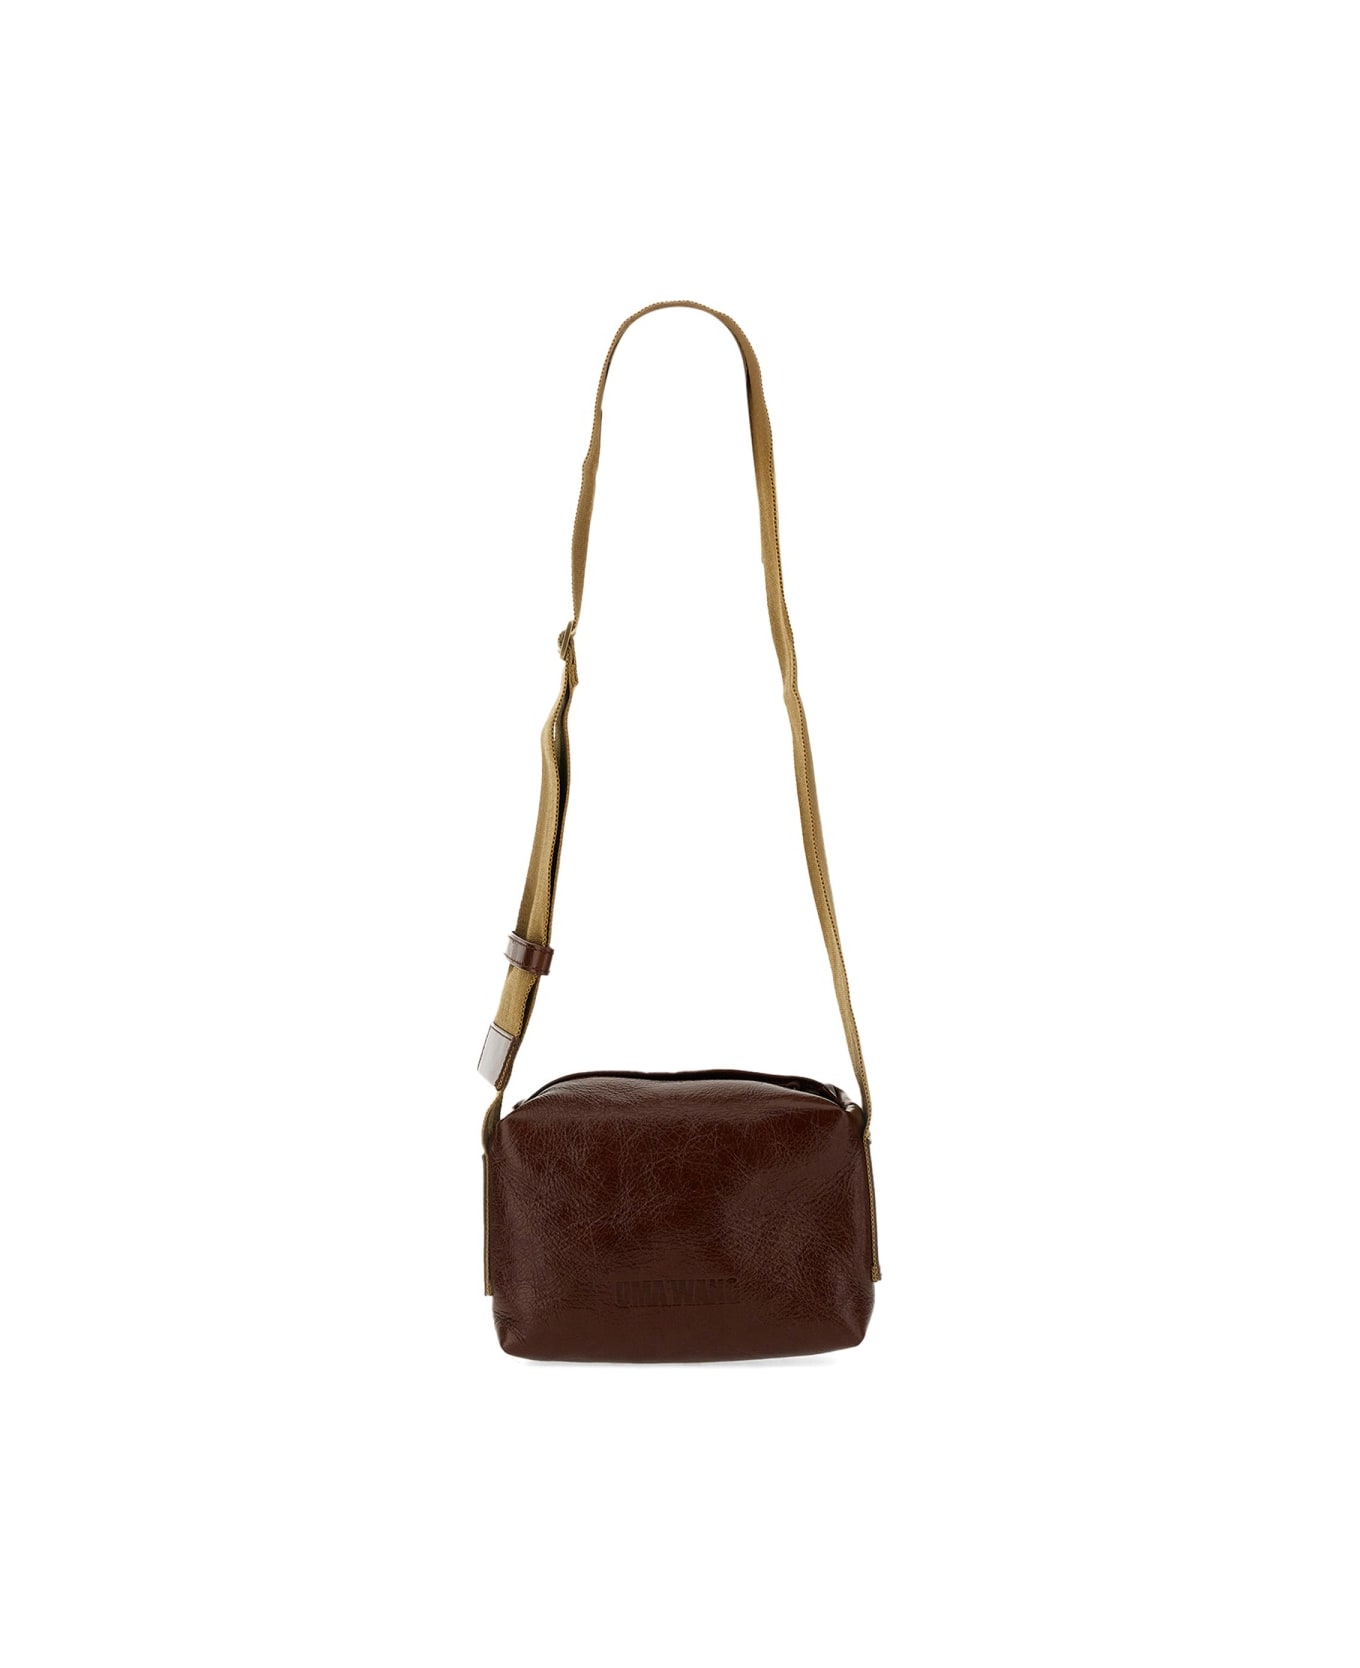 Uma Wang Small Leather Bag - BROWN